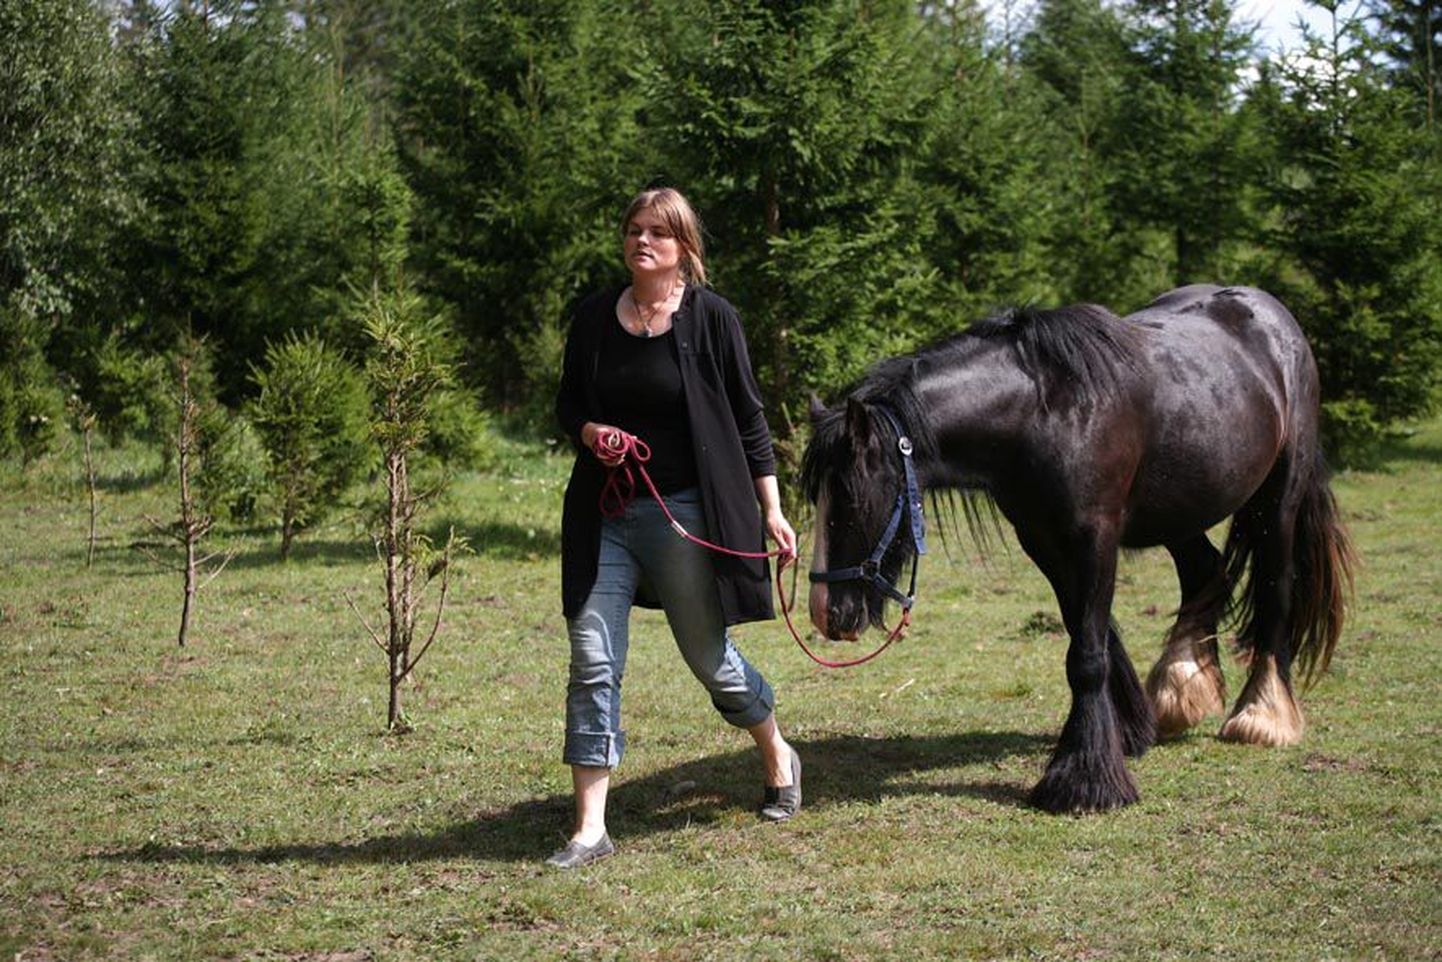 Psühholoog ja eripedagoog-nõustaja Hele Aluste aitab ratsutamisteraapia kaudu psüühikahäiretega lapsi ja korraldab huvilistele juunikuus koolituse hobuste paremaks tundmaõppimiseks.